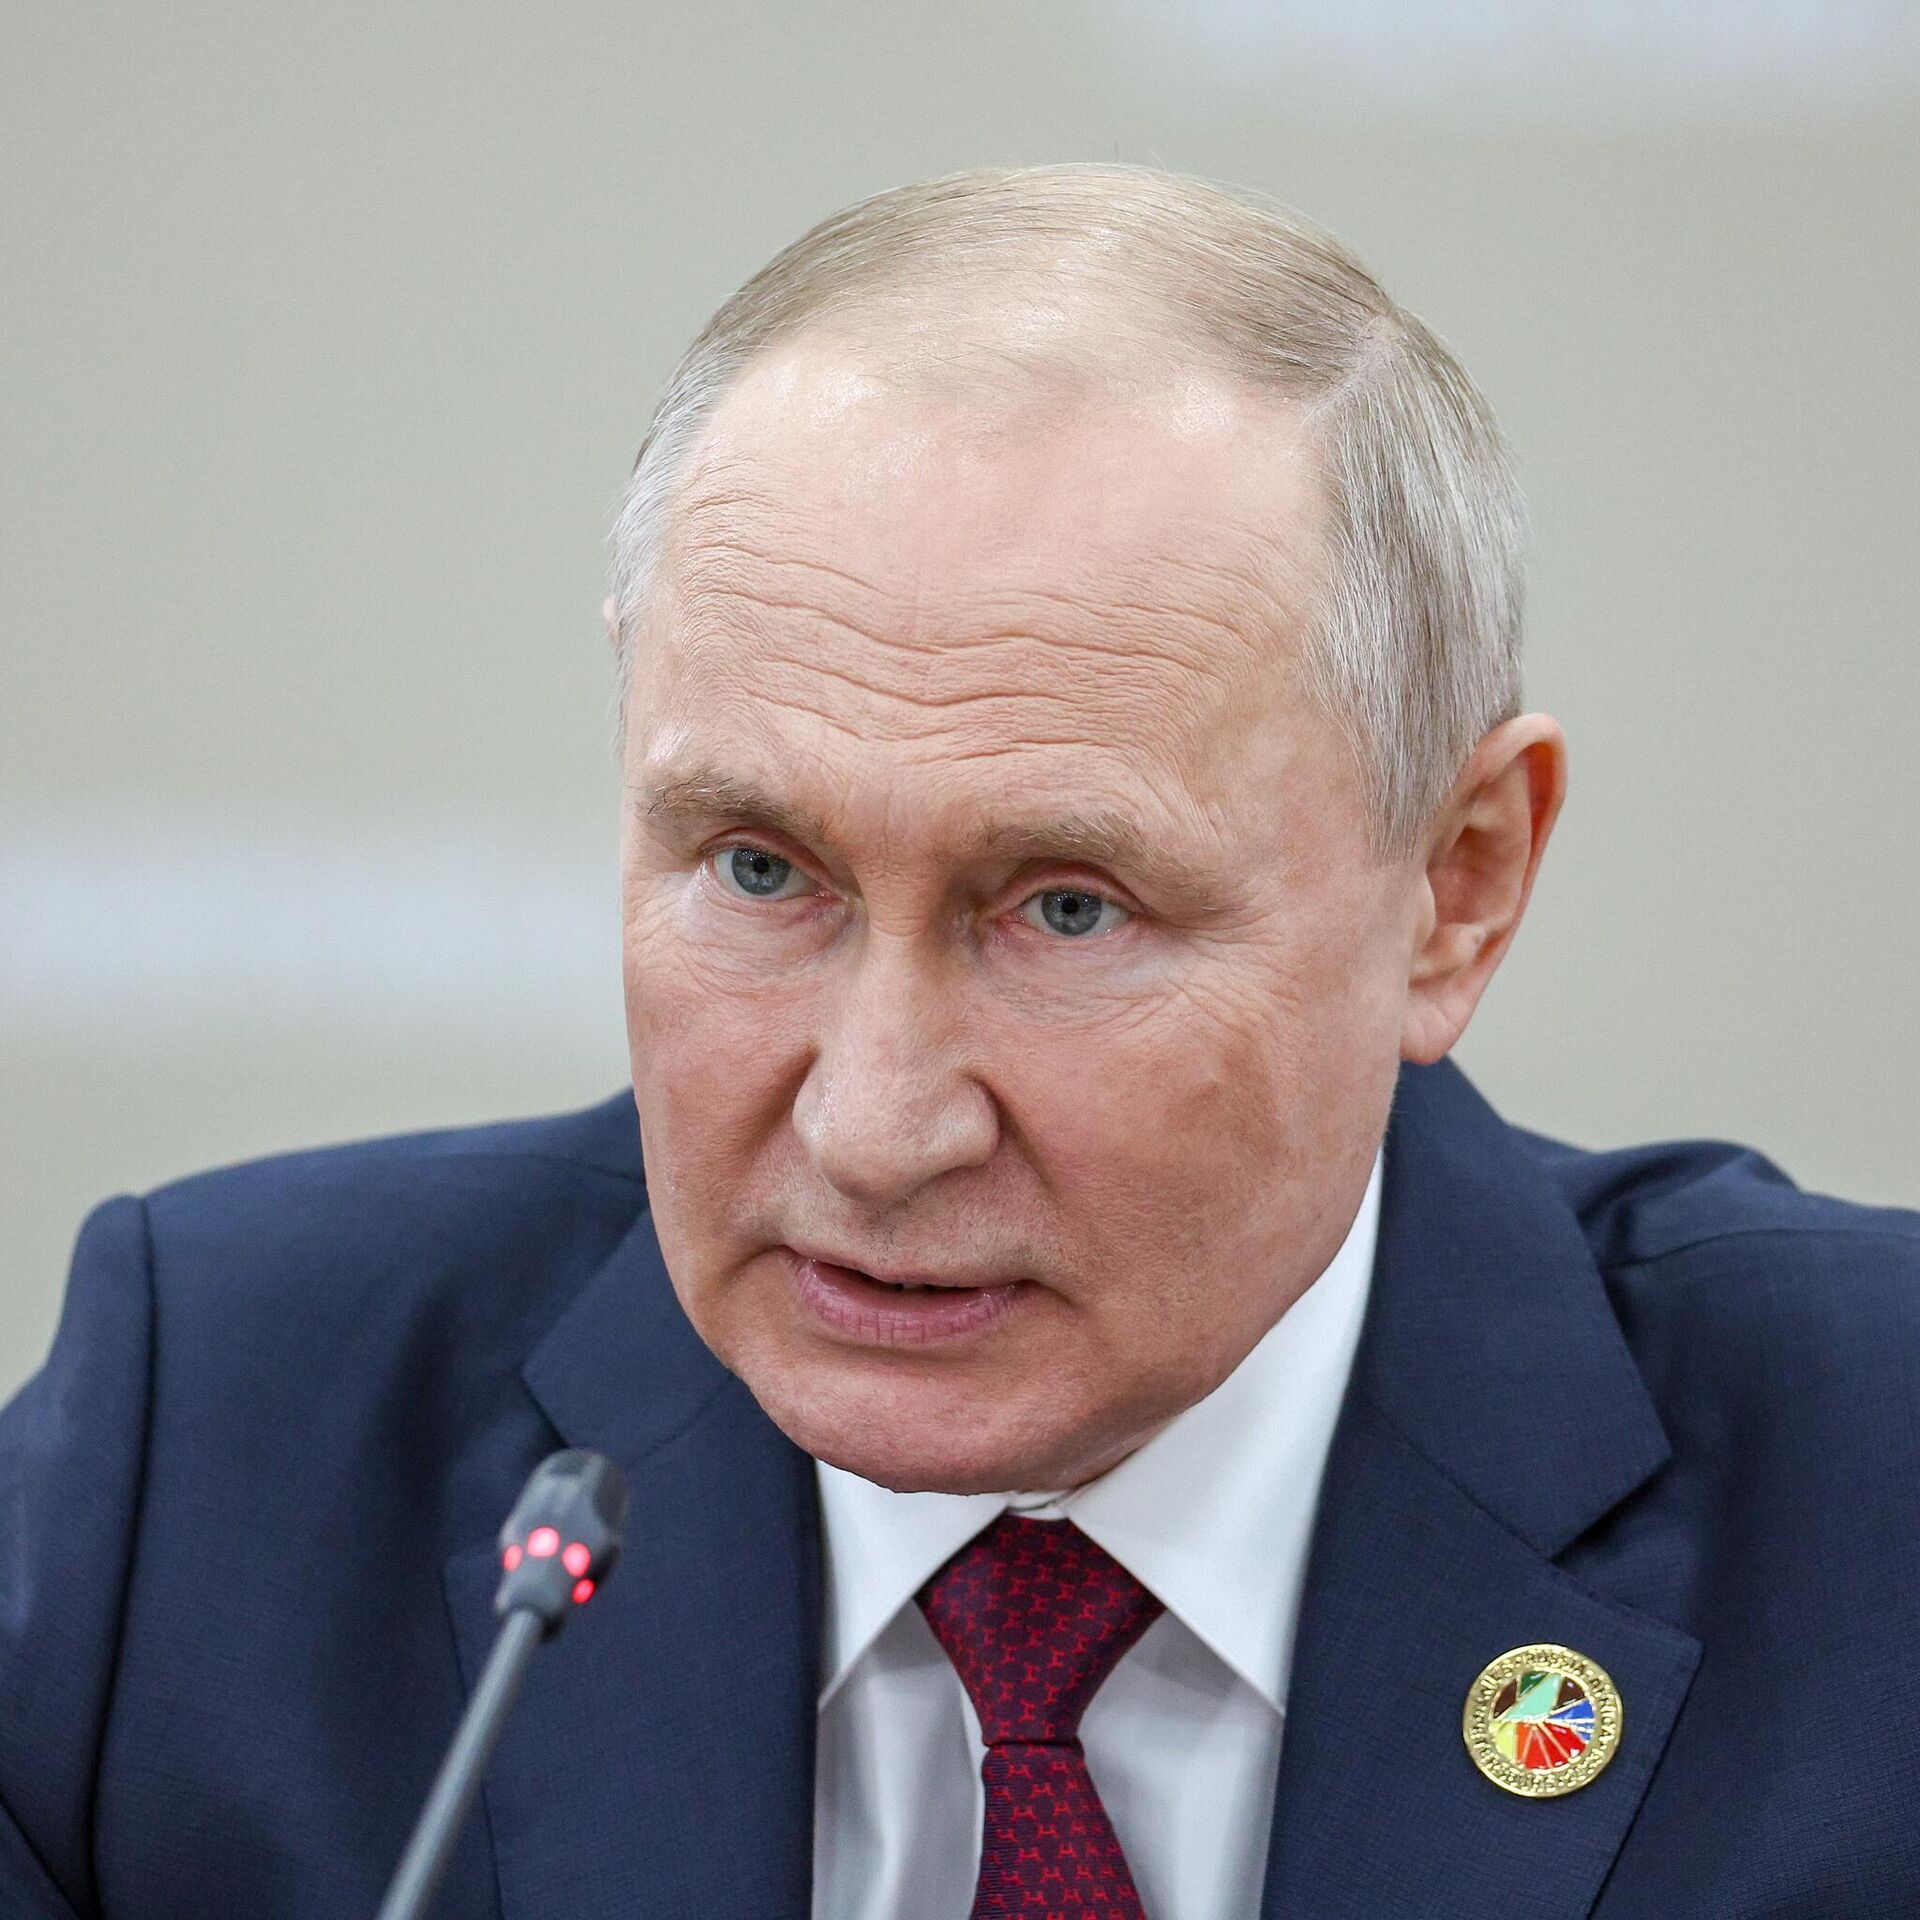 بوتين يلتقي رئيس الوزراء العراقي الثلاثاء المقبل في موسكو